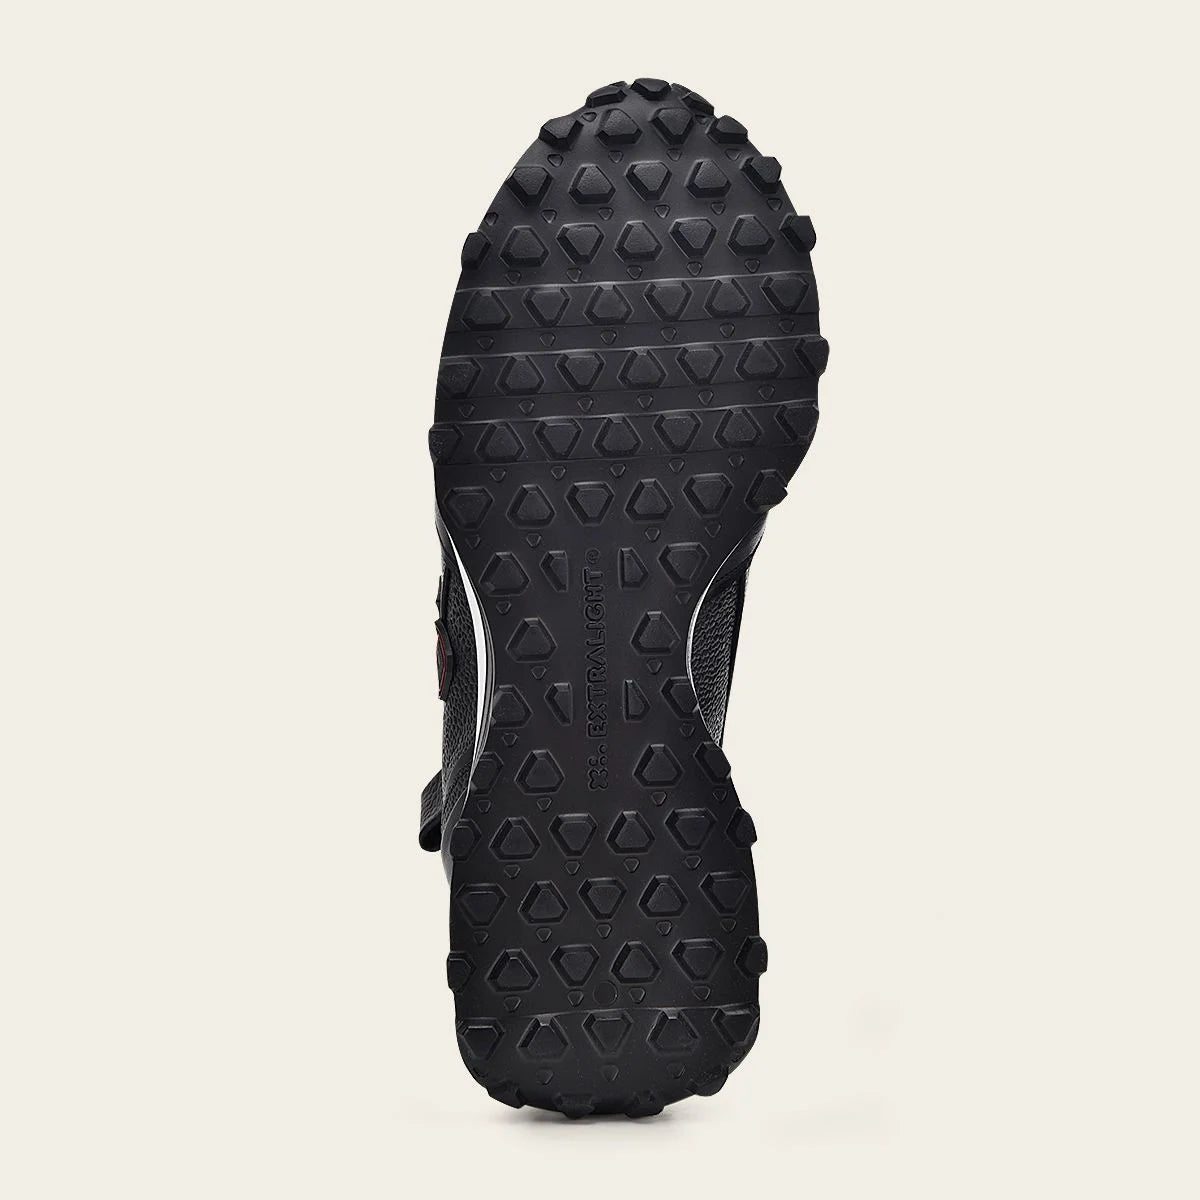 Zapatillas de piel auténtica color negro con suela de eva.